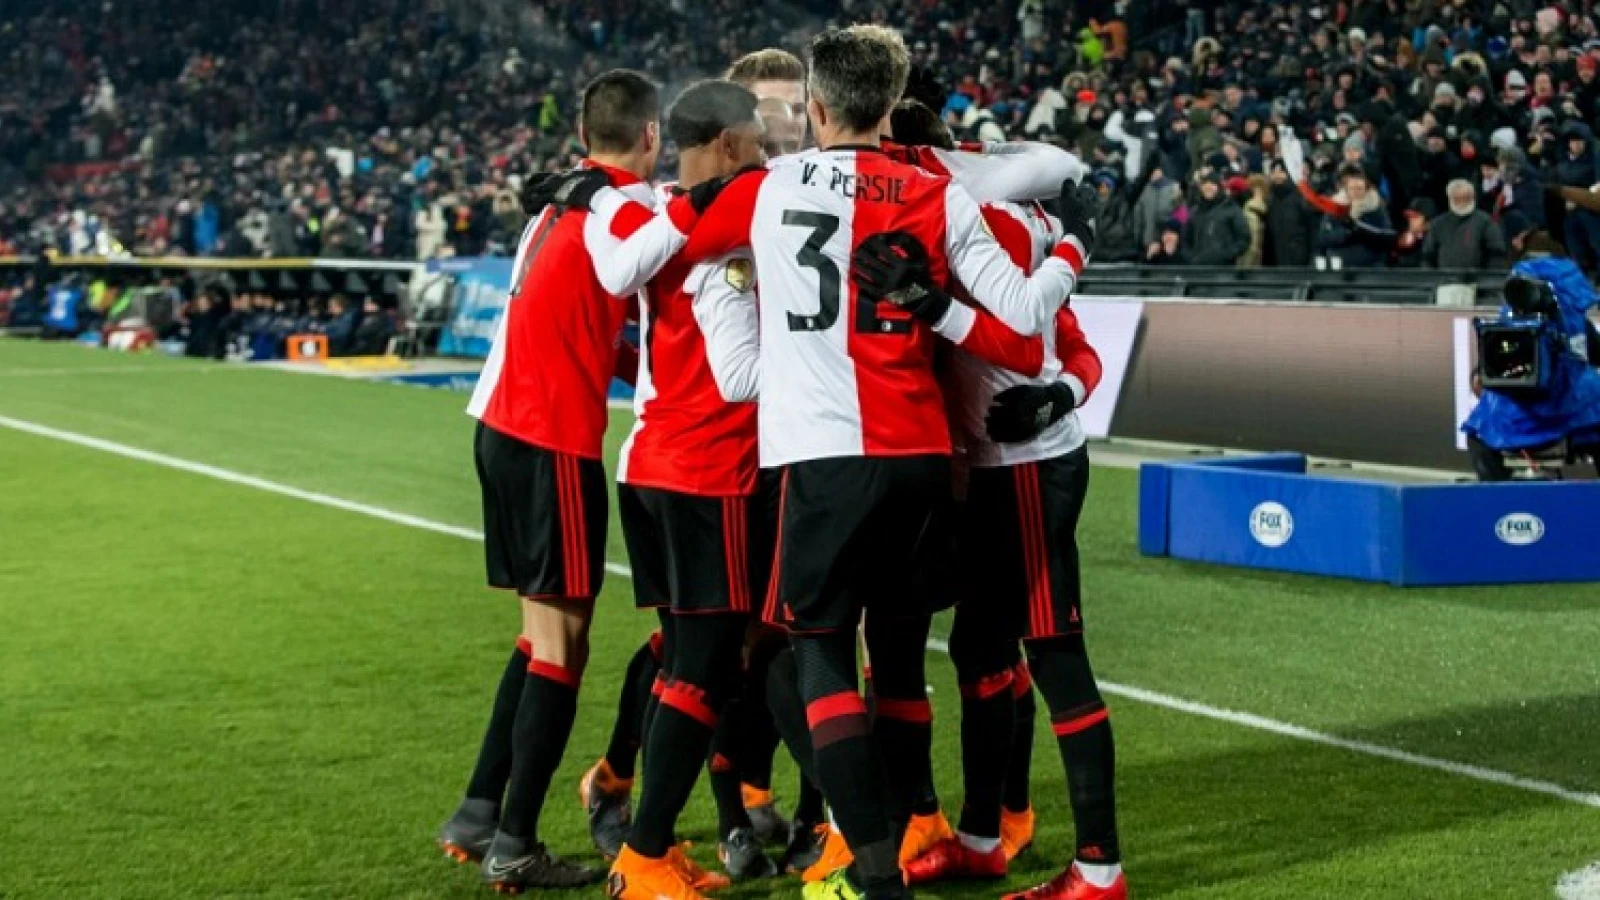 MATCHDAY | Feyenoord - AZ